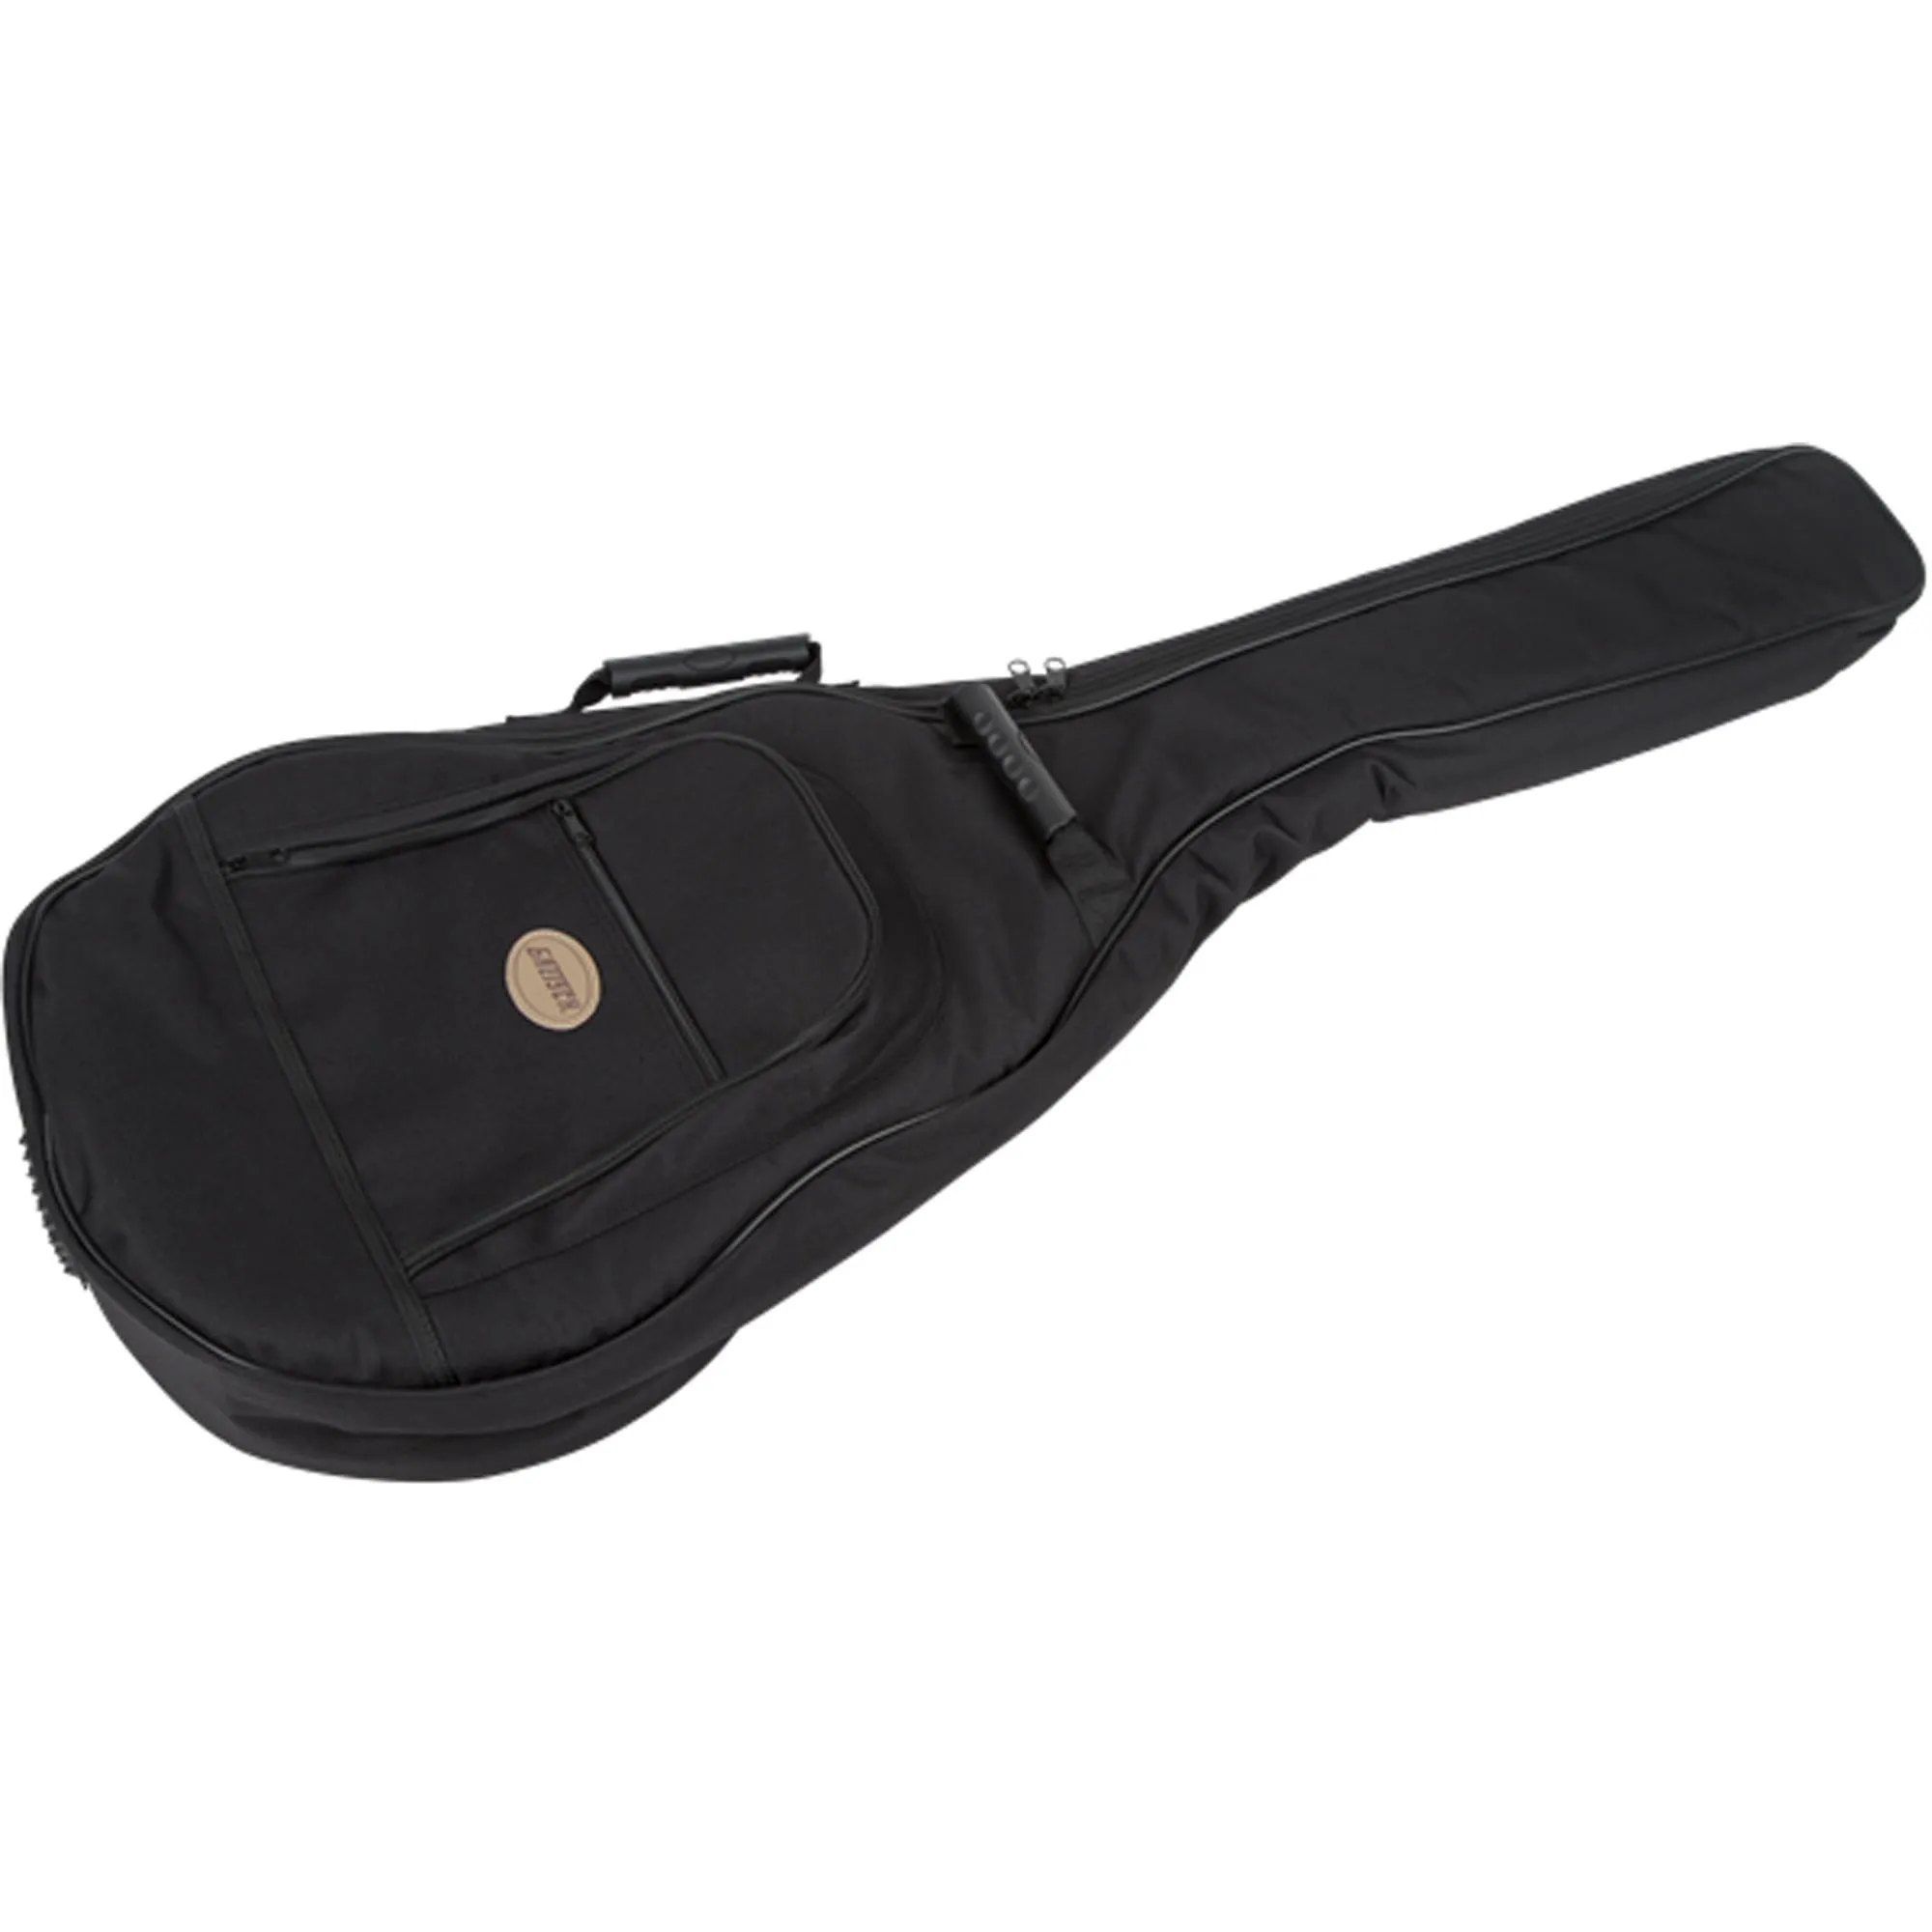 Capa Para Guitarra Gretsch G2162 Hollow Body por 699,99 à vista no boleto/pix ou parcele em até 10x sem juros. Compre na loja Mundomax!